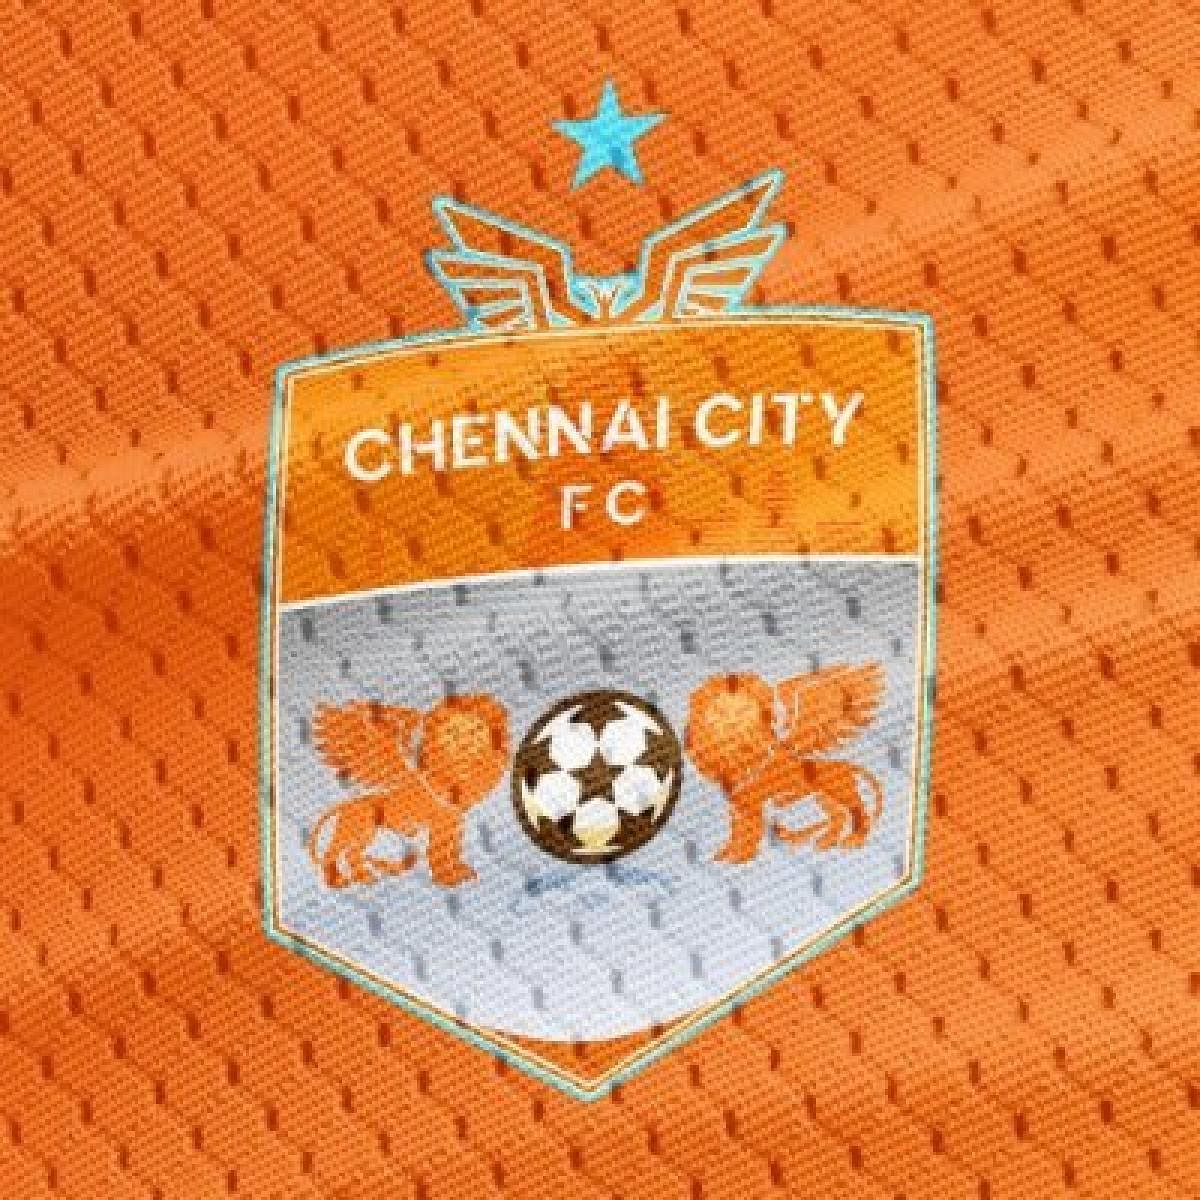 Chennai City FC I-League LOGO. Photo from TWITTER